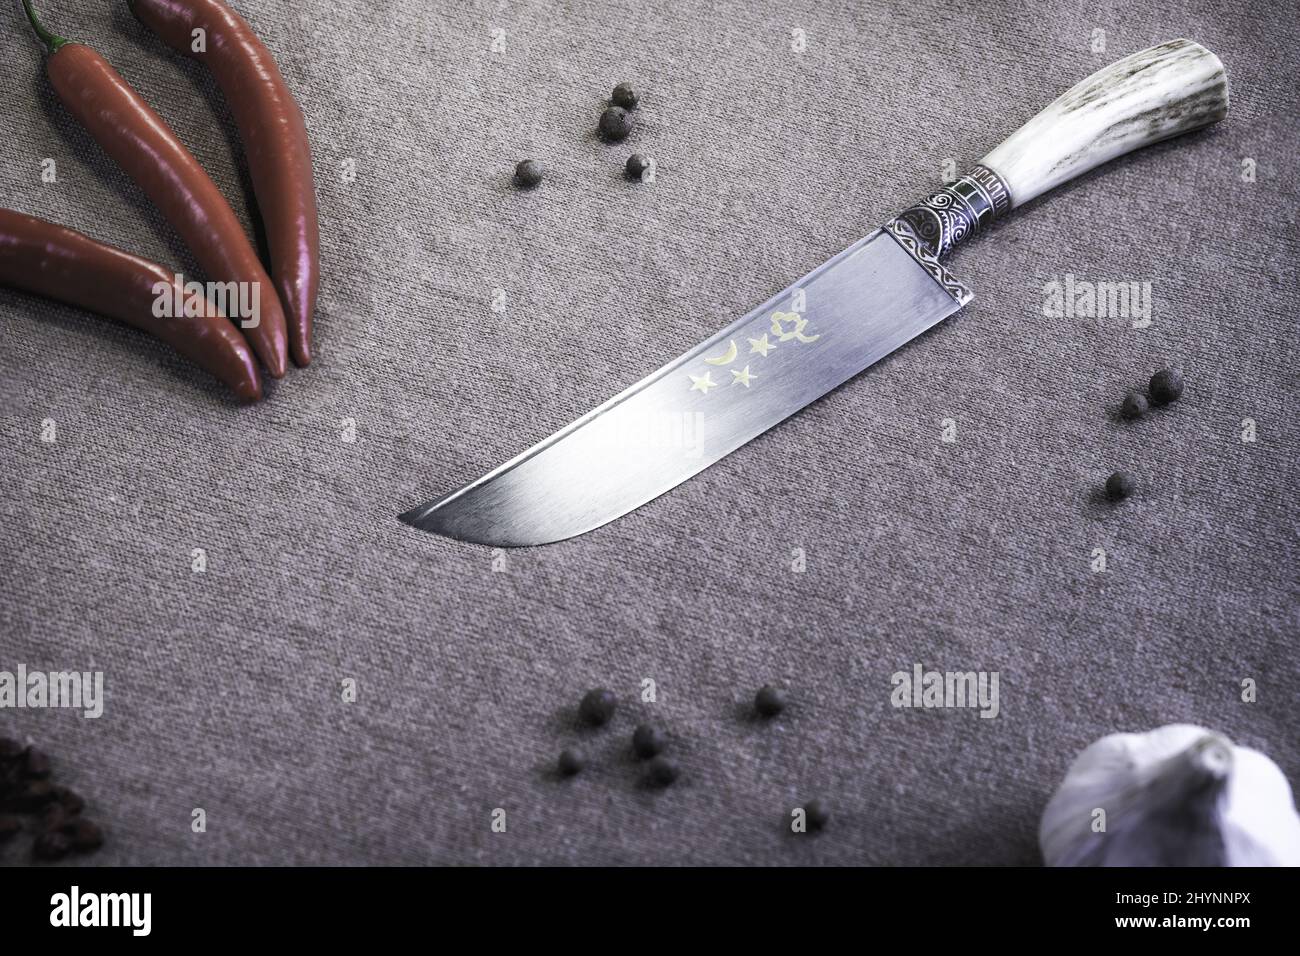 Draufsicht auf ein scharfes, dekoratives Messer, umgeben von Pfeffer und Knoblauch auf einer öffentlichen Fläche Stockfoto